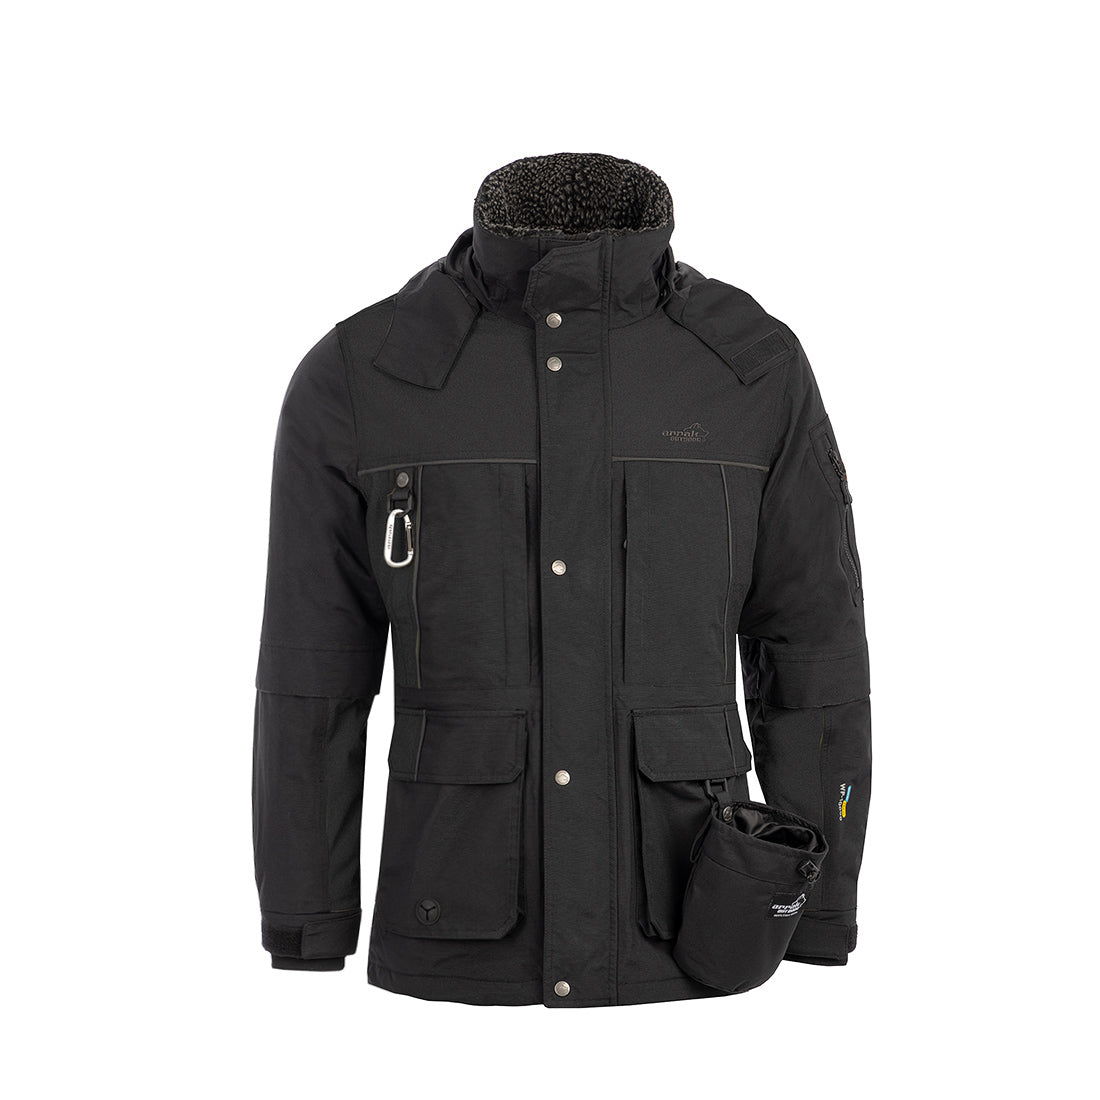 New Waterproof Original Winter Jacket Men (Black) – Arrak Outdoor USA